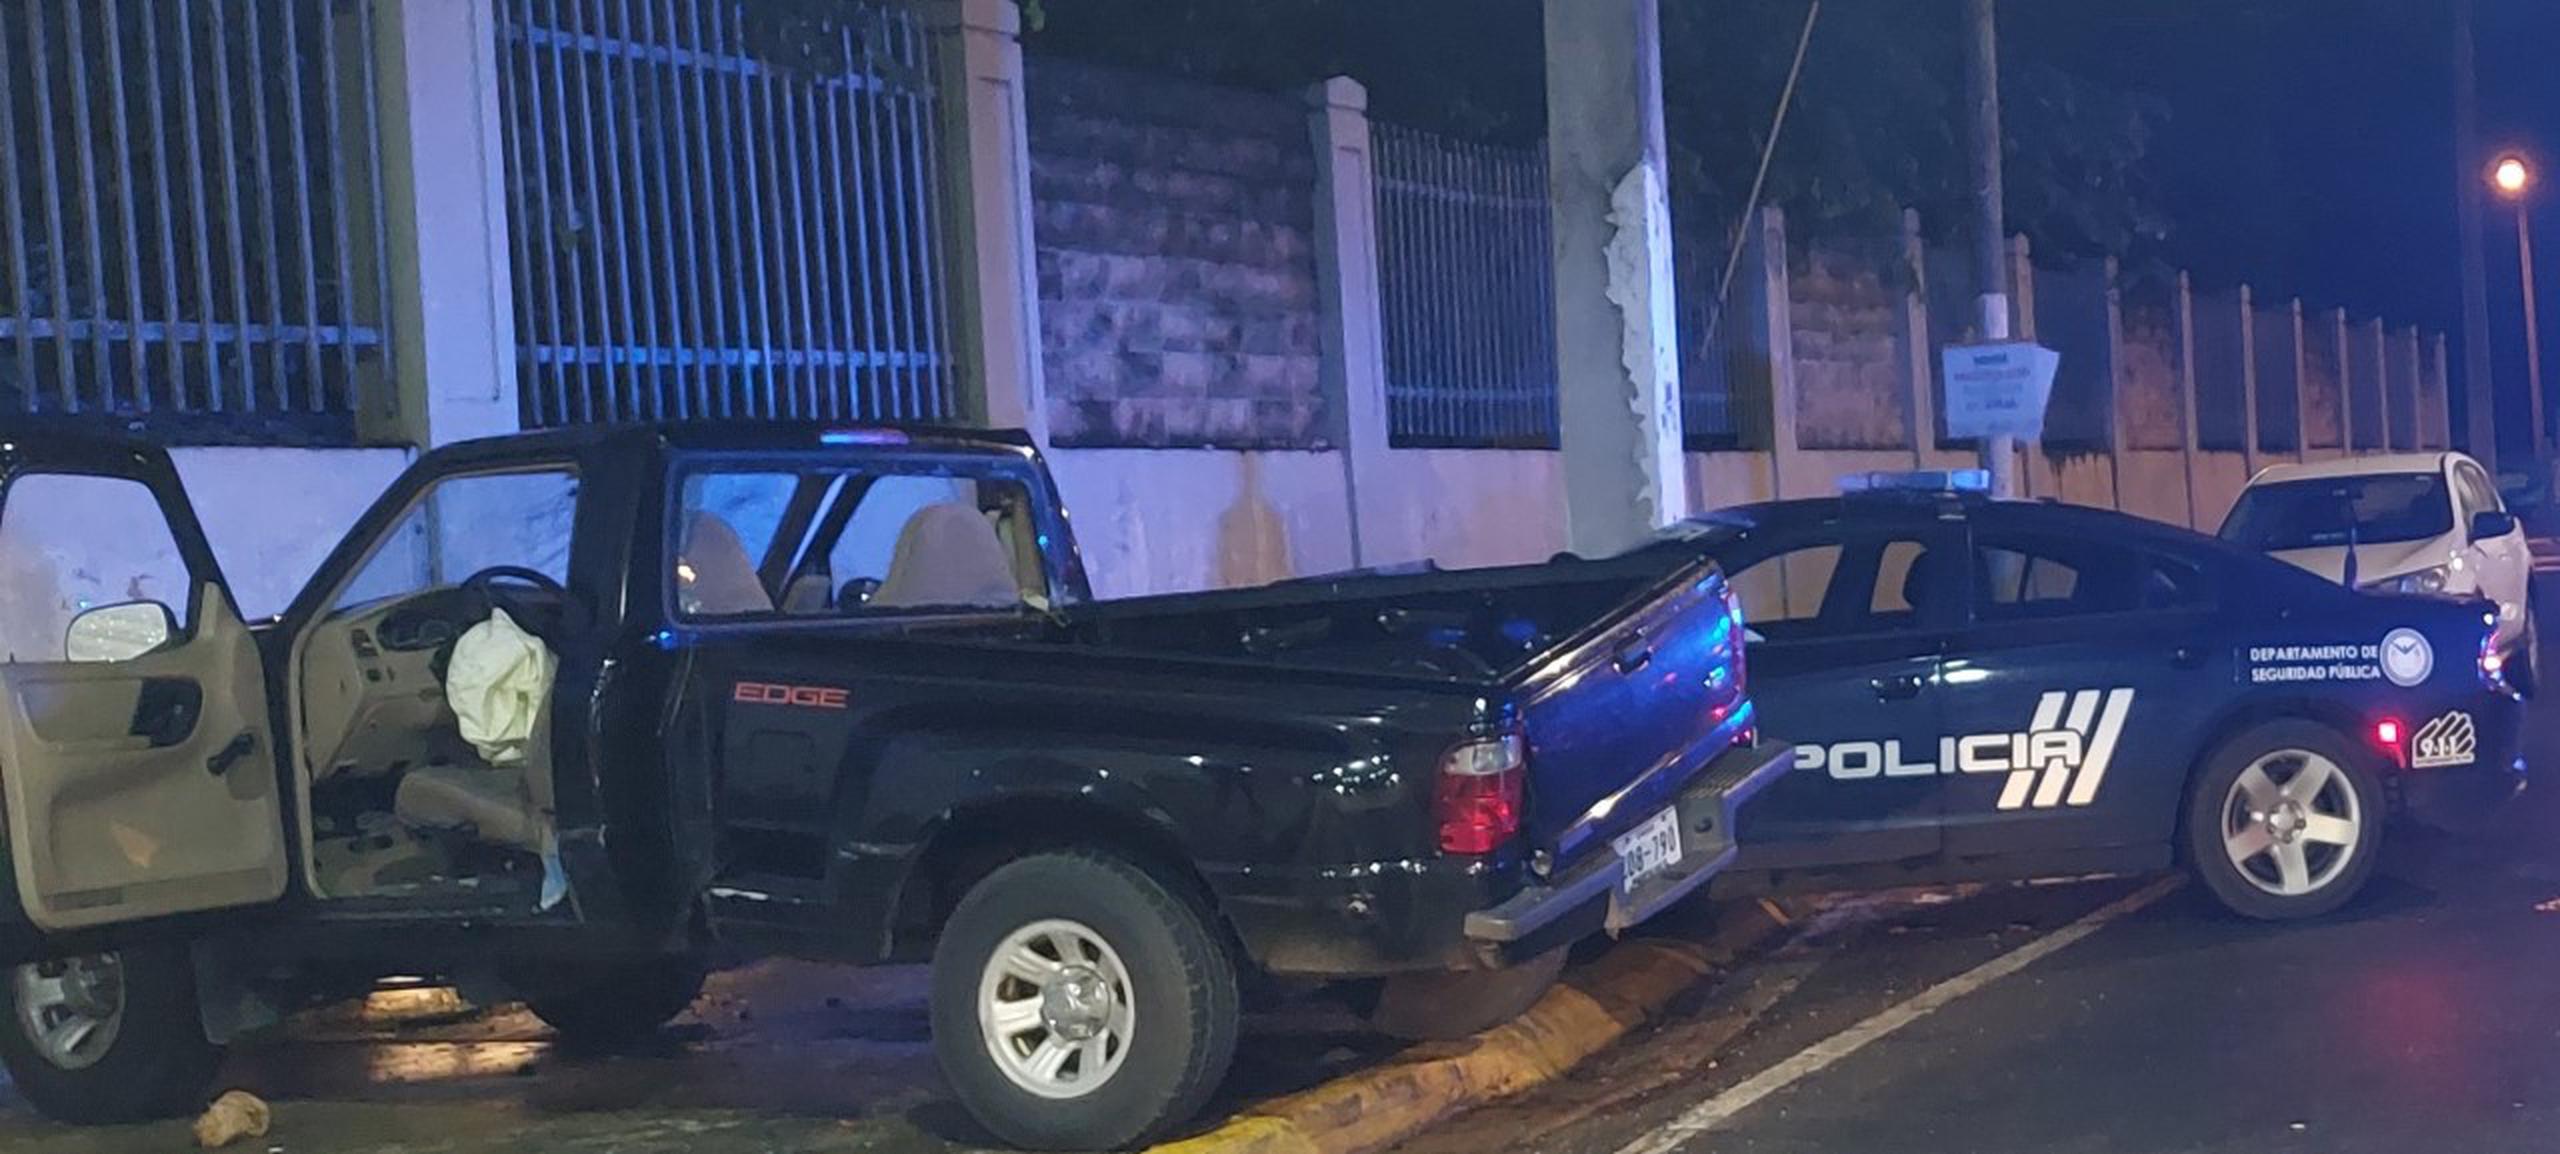 Las autoridades solicitaron la ayuda ciudadana para identificar al conductor de esta guagua que impactó una patrulla en Vega Baja y huyó del lugar.